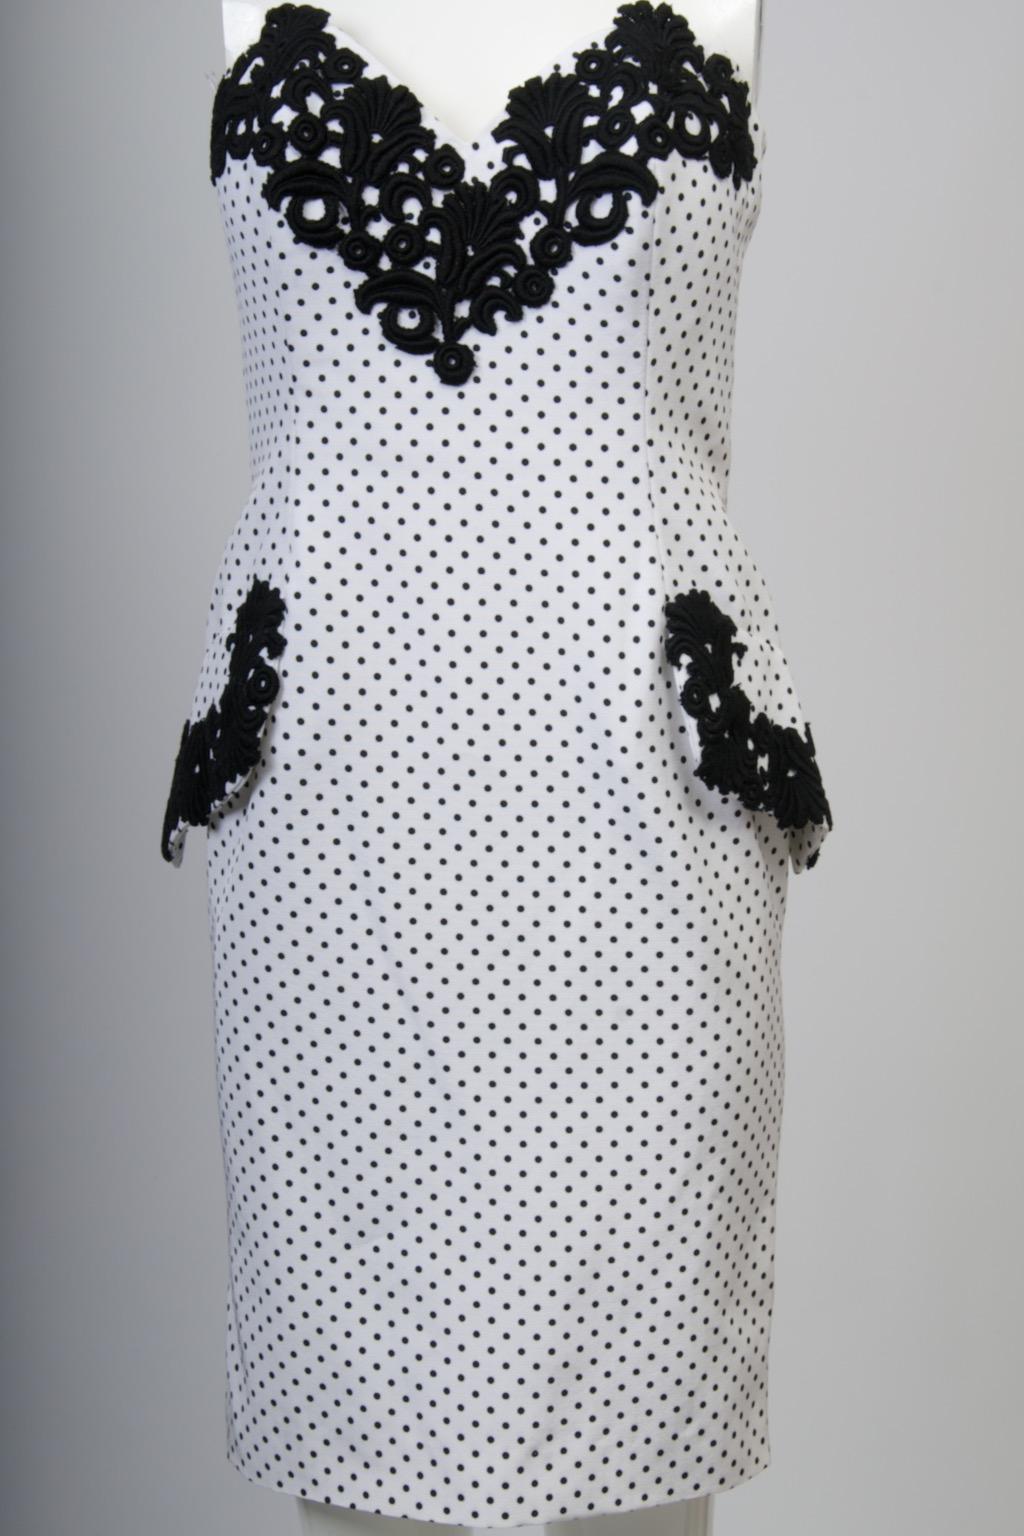 Isabelle Allard 1980 robe bustier et veste boléro en faille blanche à petits pois noirs. La robe façonnée et ajustée est bordée au niveau du buste et des poches à faux rabat d'une lourde dentelle noire qui ponctue le motif. Au dos, avec sa fermeture